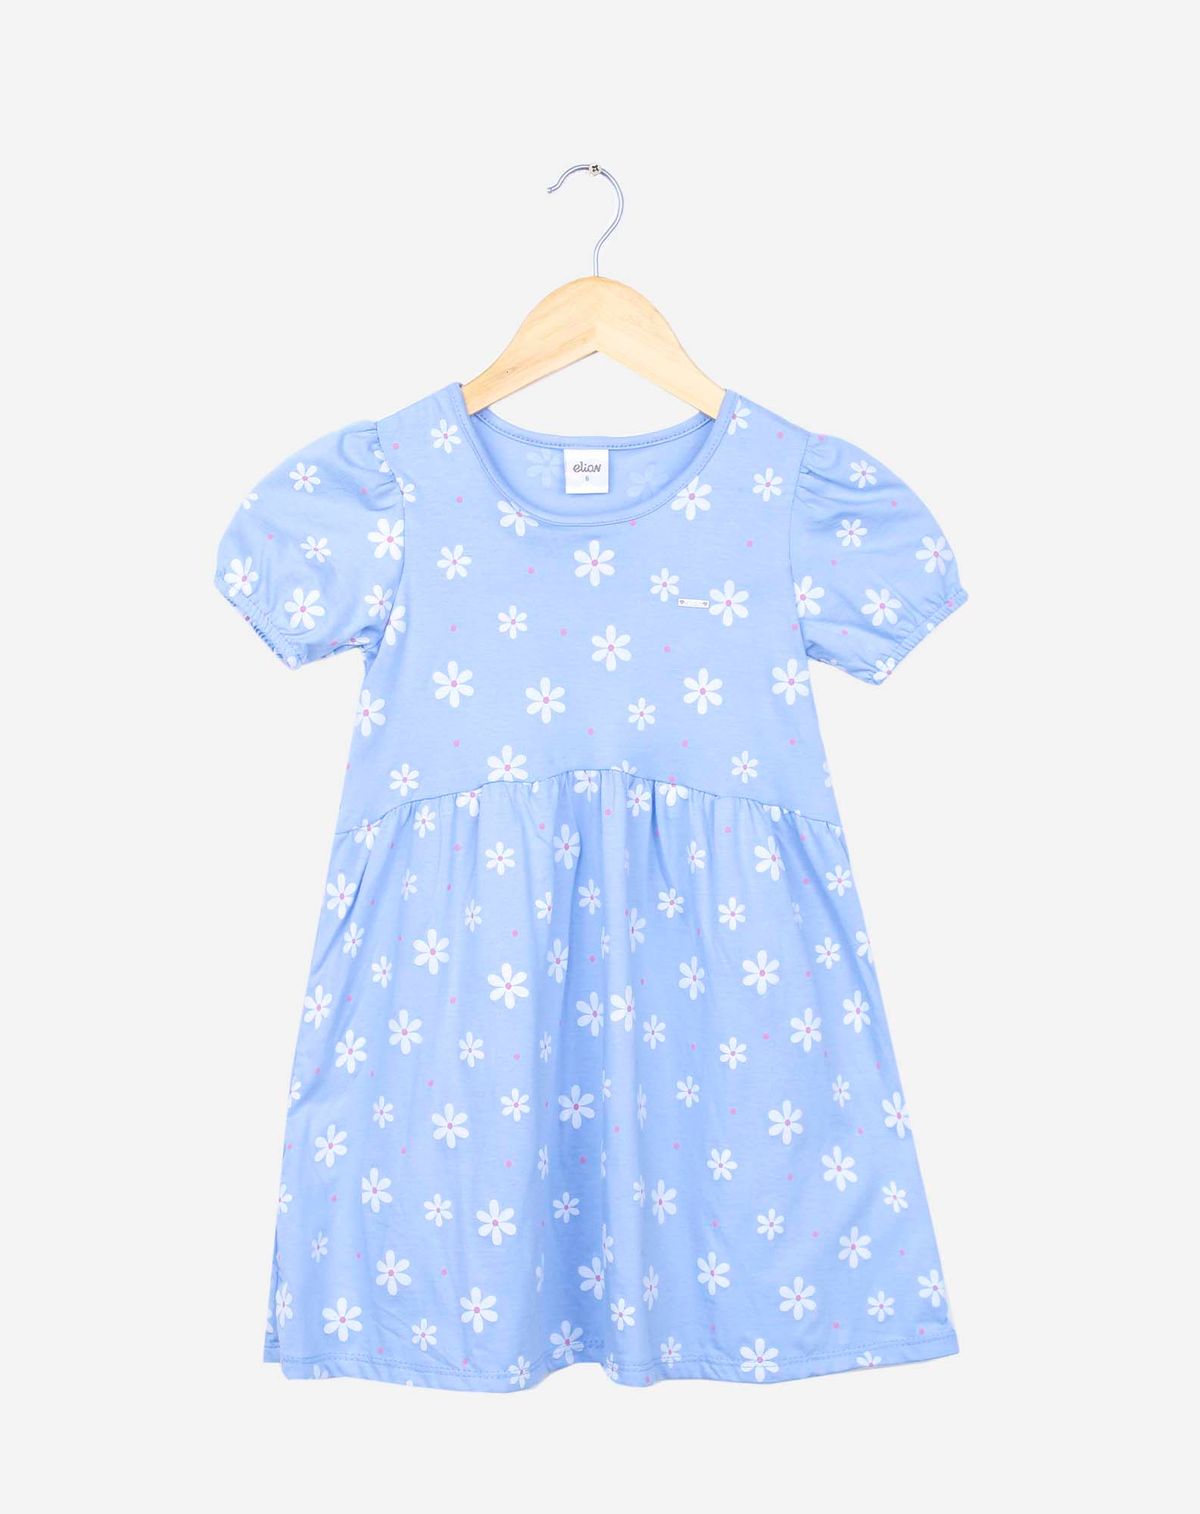 672866003-vestido-infantil-menina-manga-curta-bufantes-estampado-azul-8-97e